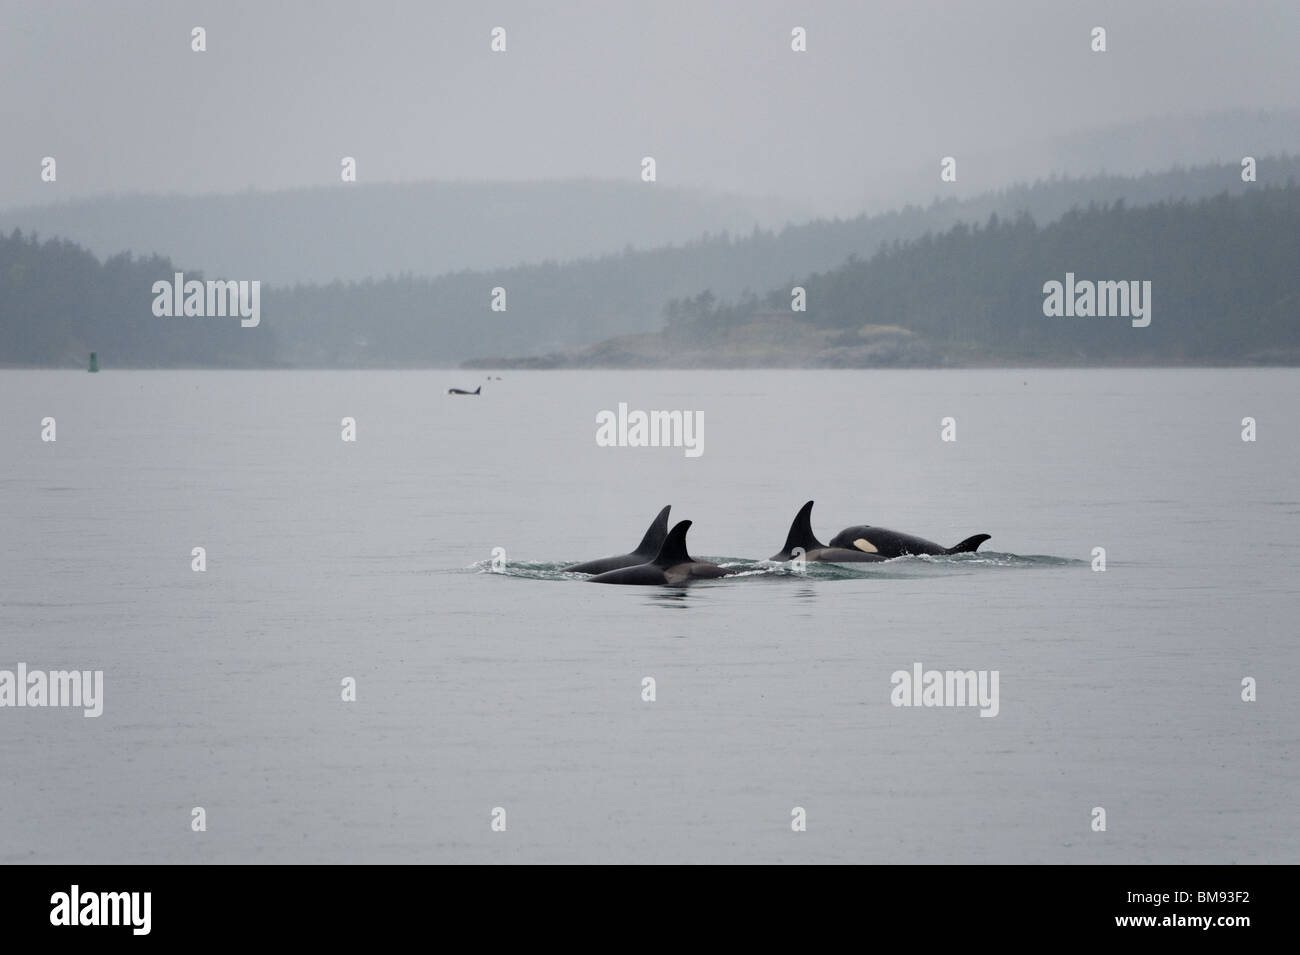 Orca balene da 'L' pod cercare cibo in San Juan Islands dello stato di Washington. Un neonato di balena accompagna il pod. Foto Stock